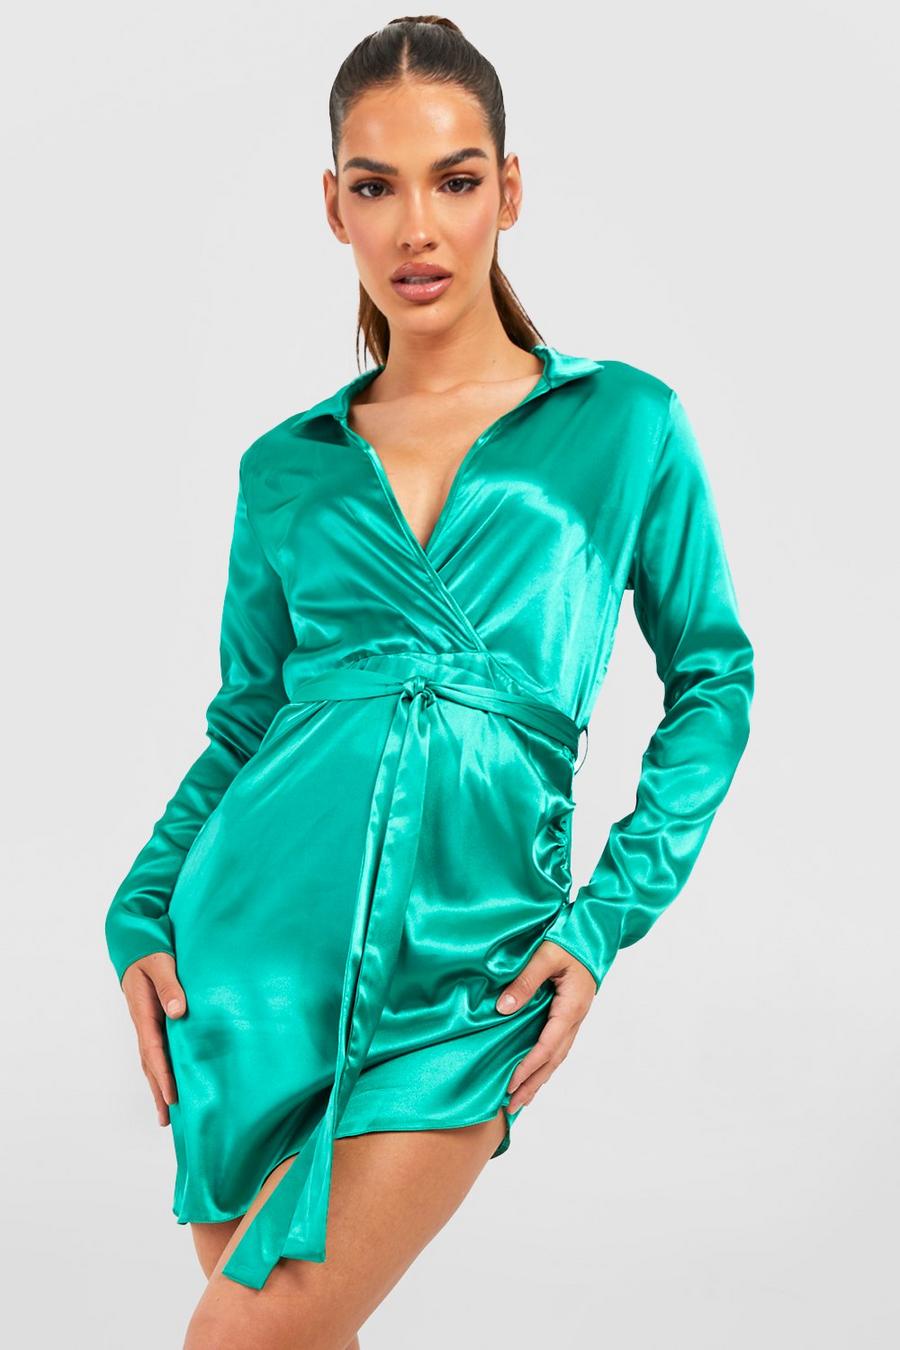 Emerald Satinklänning i omlottmodell